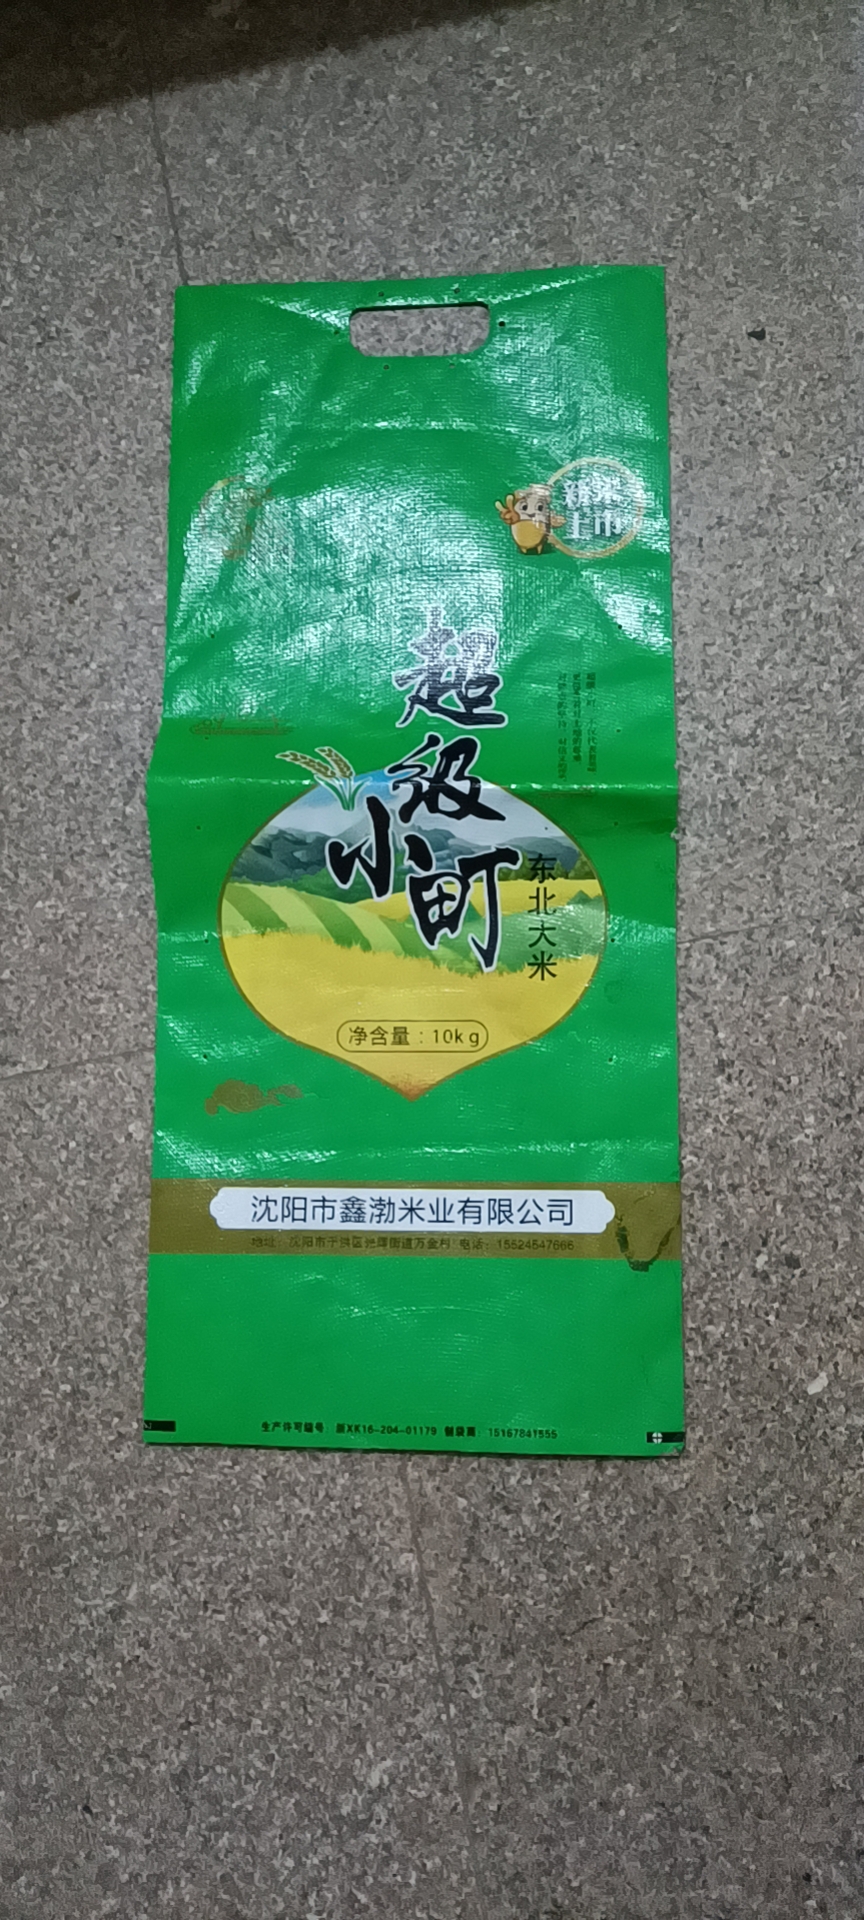 上海塑胶复合包装袋批发价格_厂价出售【合肥市富祥编织袋有限公司】